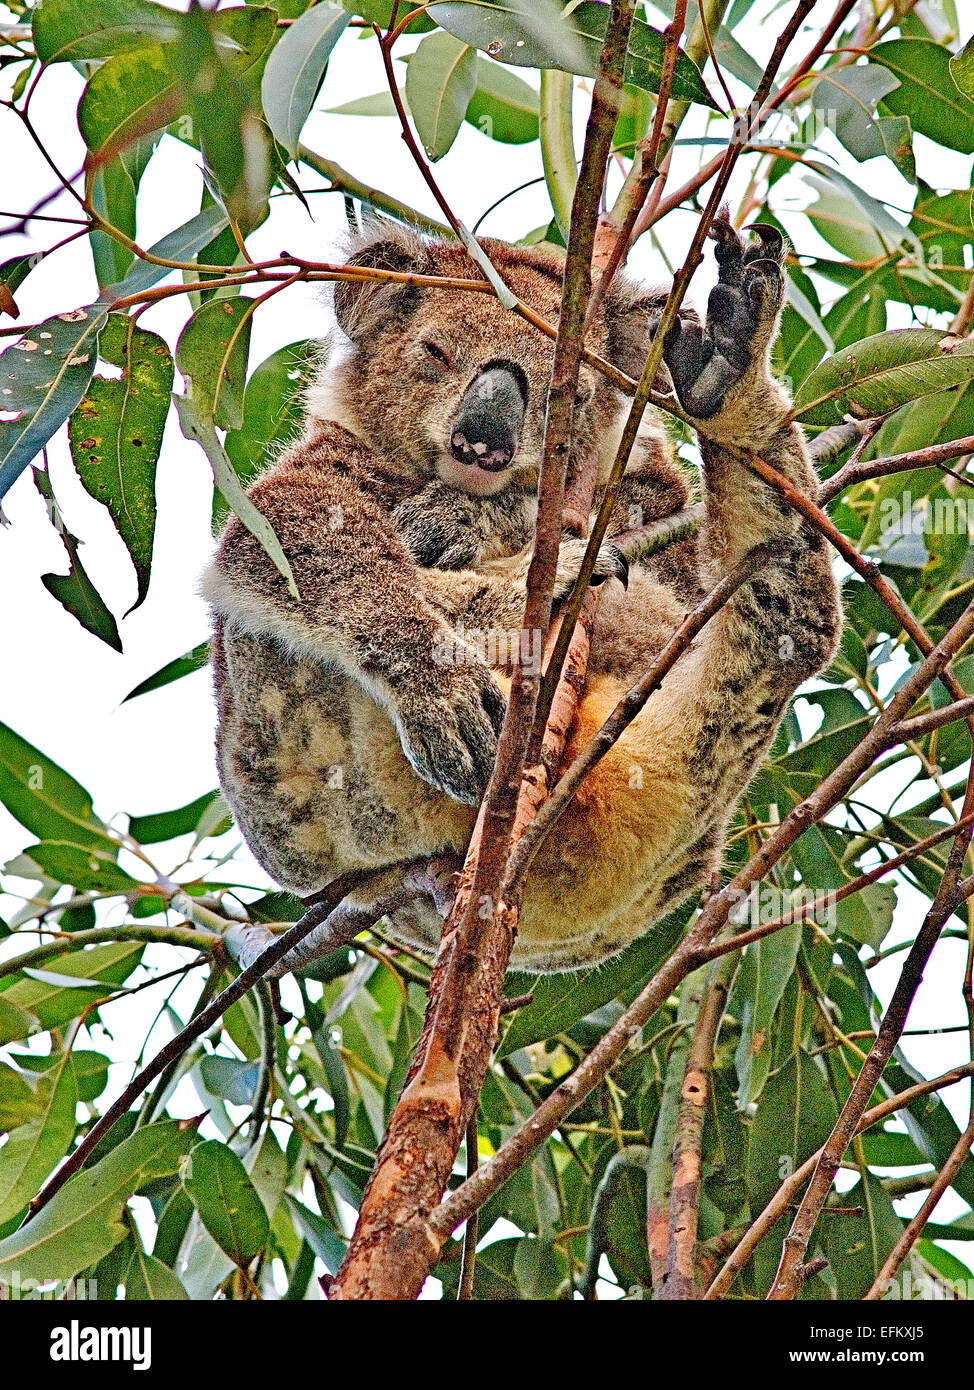 Australia: Koala (Phascolarctus cinereus) asleep in tree Stock Photo